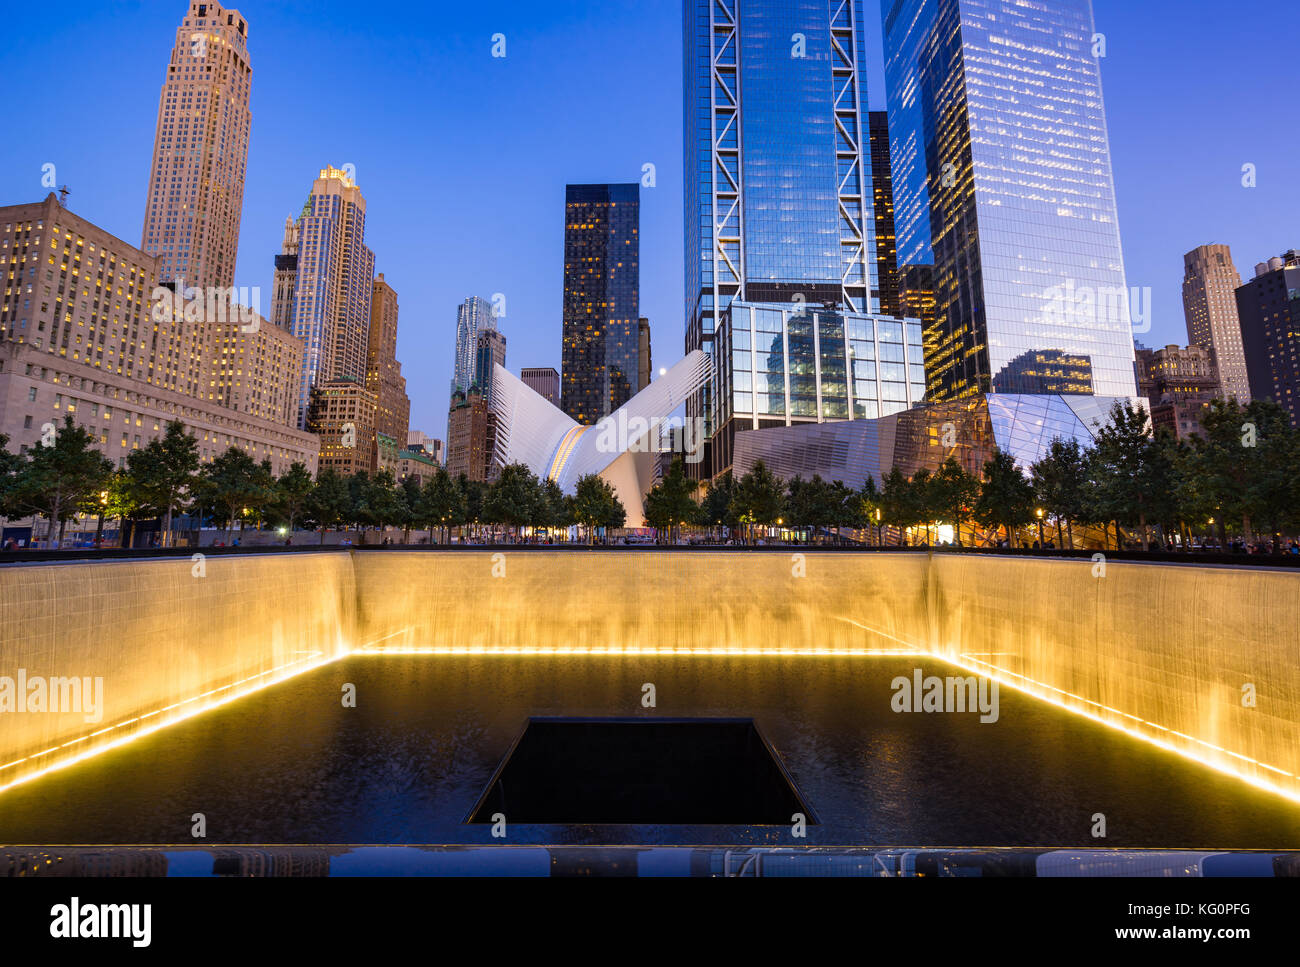 L'Amérique du miroir d'eau au crépuscule lumineux avec vue sur le World Trade Center Tower 3 et 4. Lower Manhattan, 9/11 Memorial & Museum, New York Banque D'Images